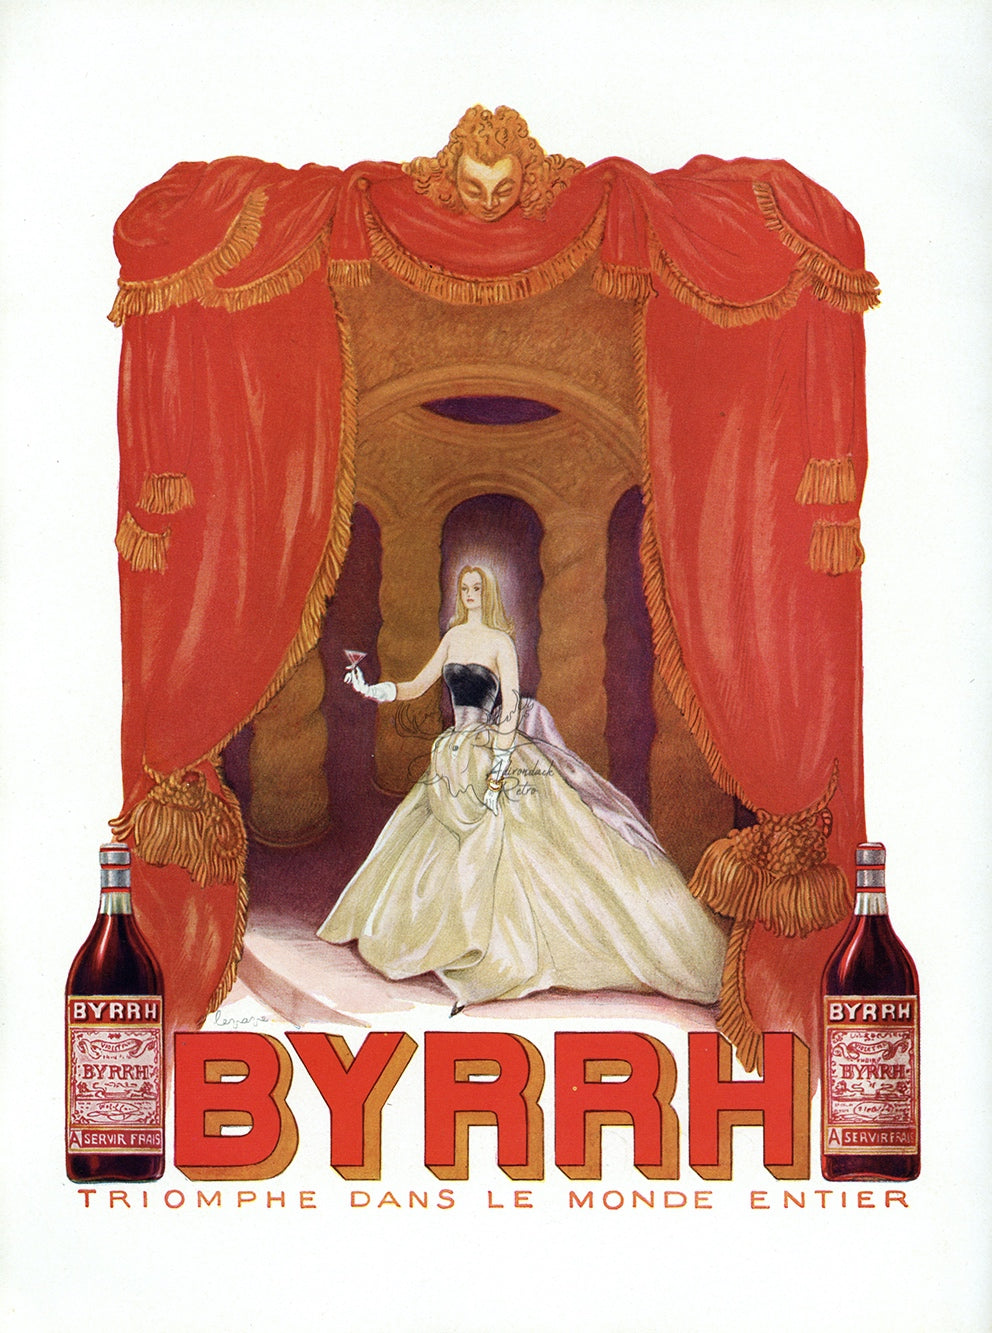 1955 Byrrh Vintage Liquor Print Ad - Georges Lepape Opera Illustration